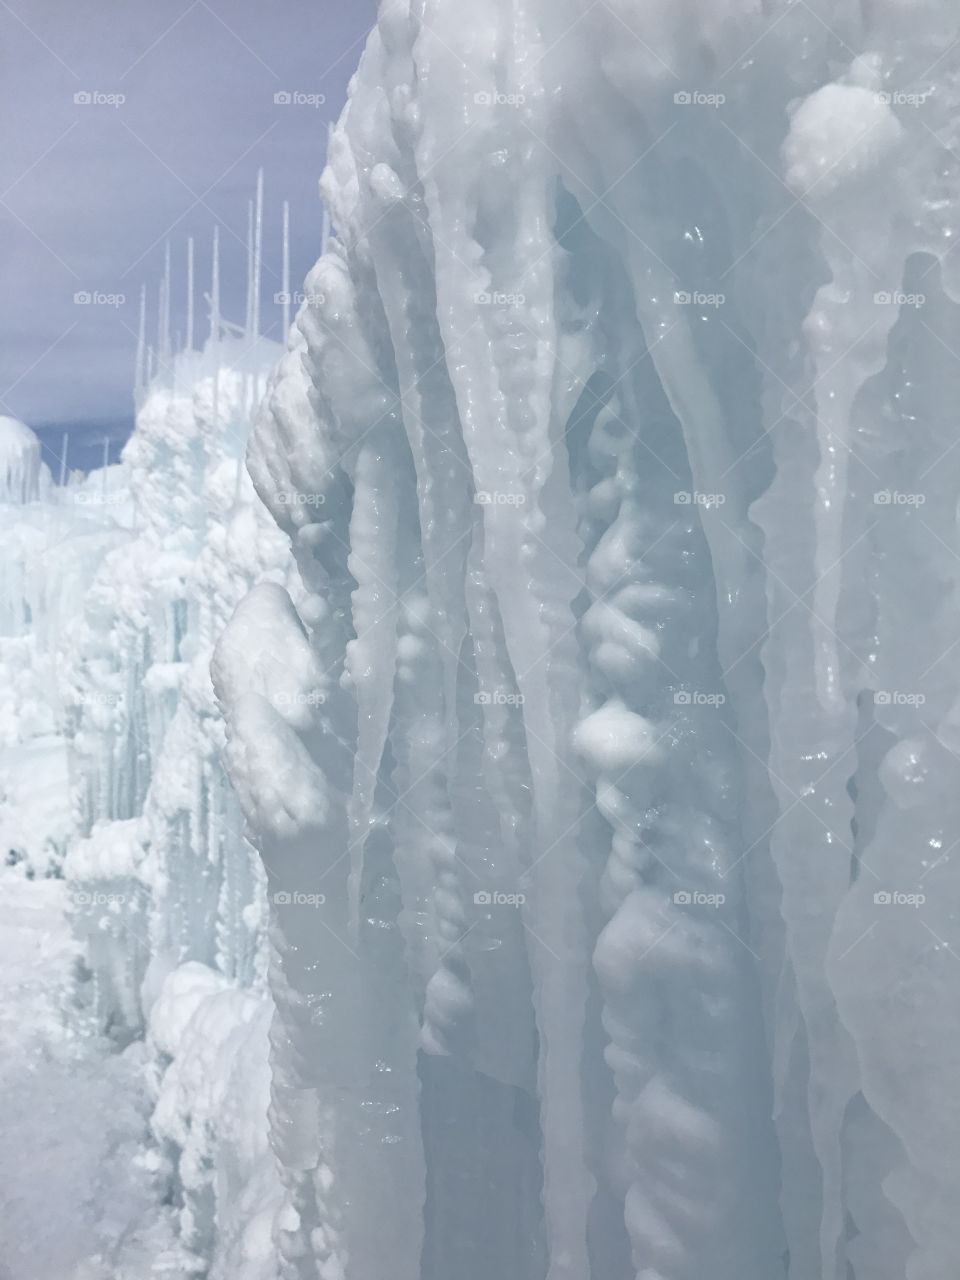 Ice walls